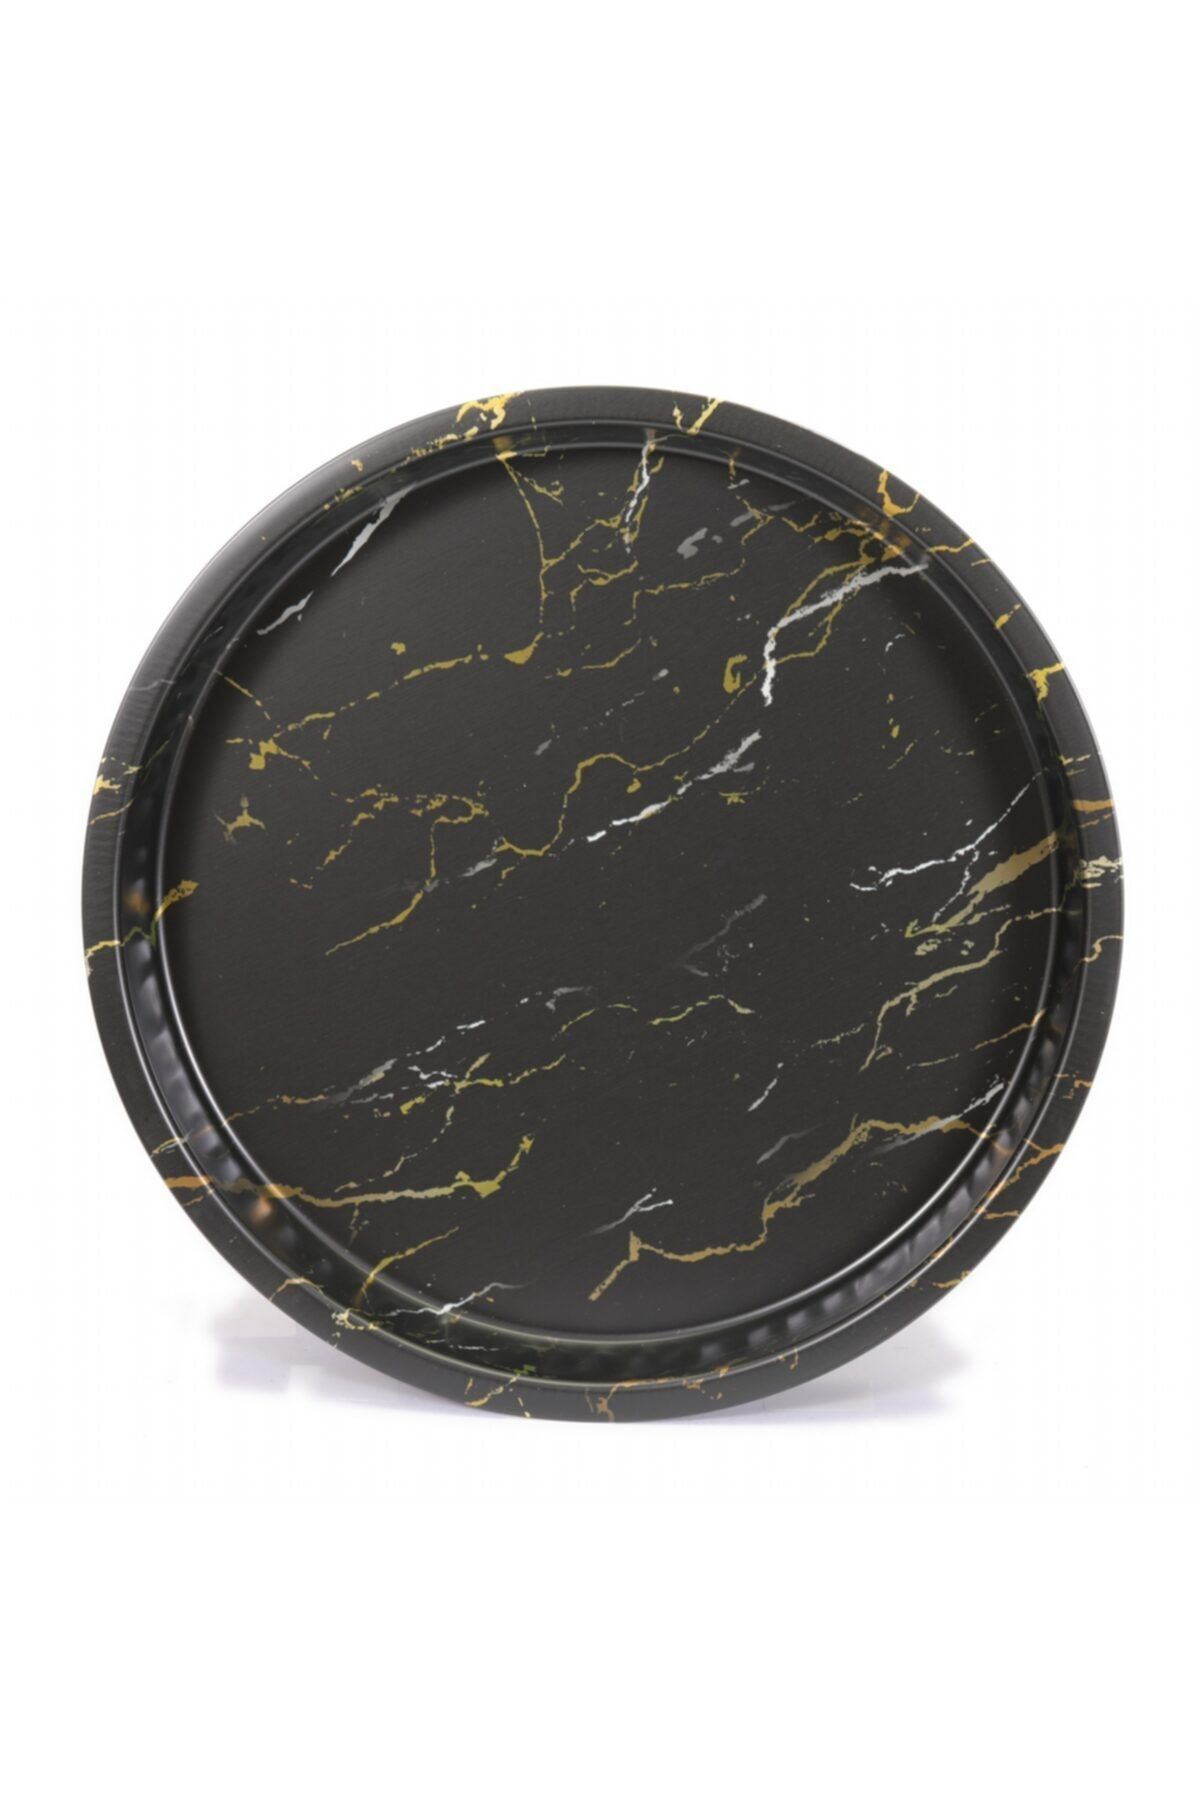 Evle Ef163-50 Marble Black Desenli Yuvarlak Tepsi 36 Cm